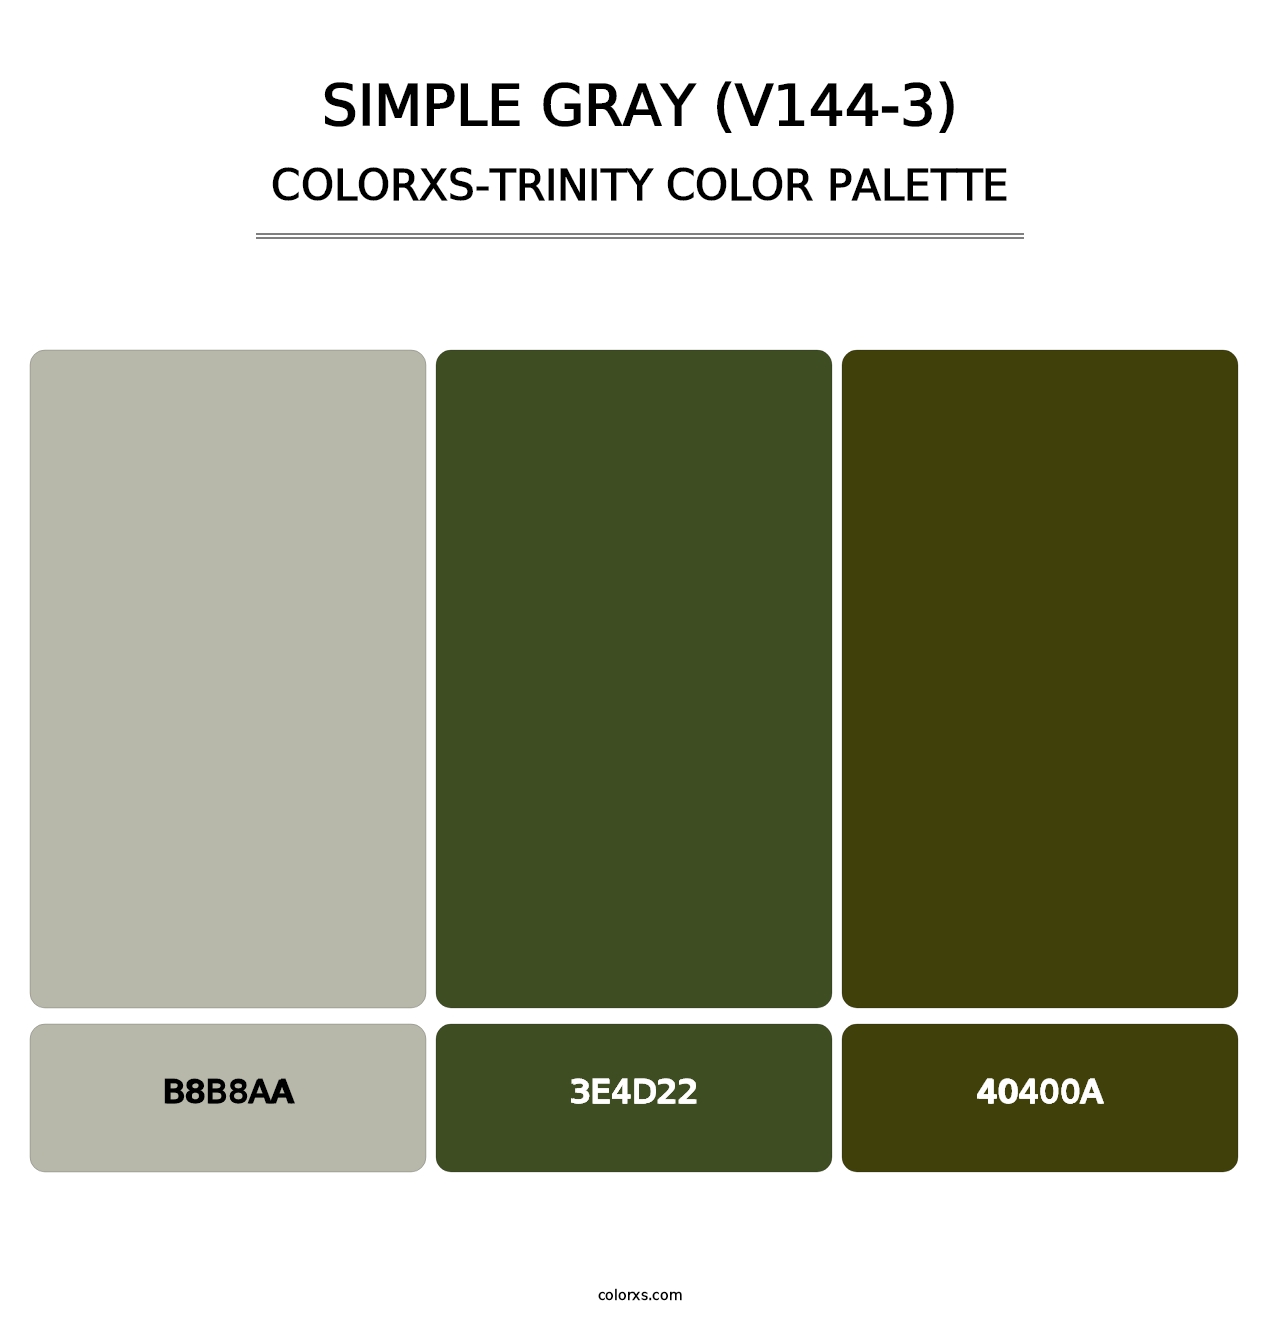 Simple Gray (V144-3) - Colorxs Trinity Palette